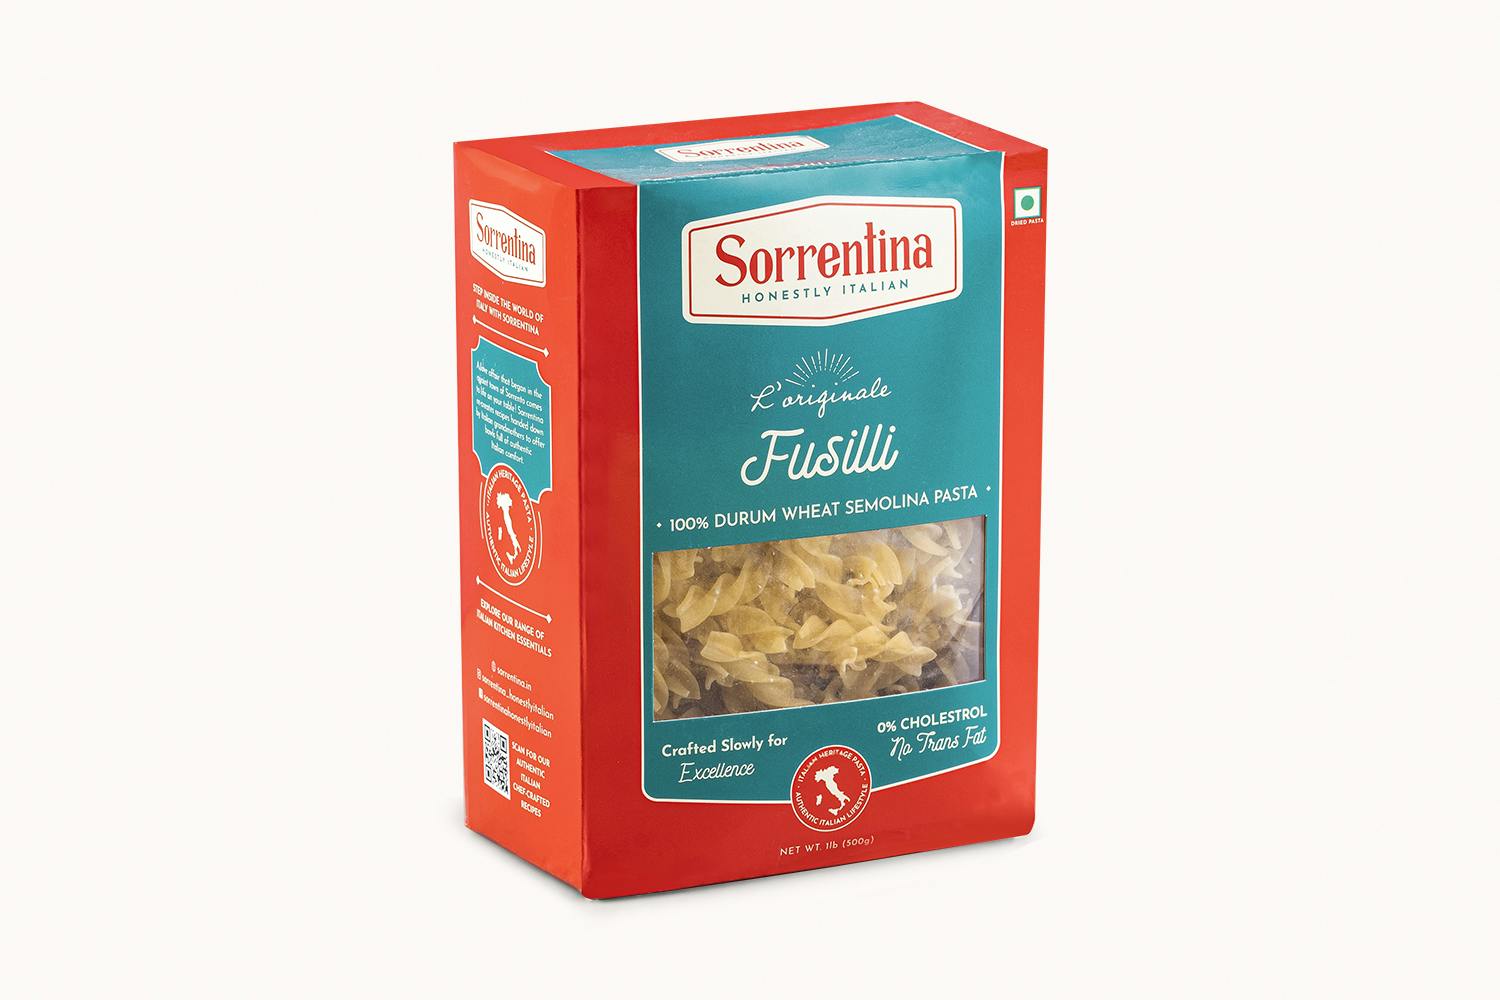 /s/o/sorrentina-fusilli-pasta-500g-box-2_jkcx9htdsmyifucg.jpg